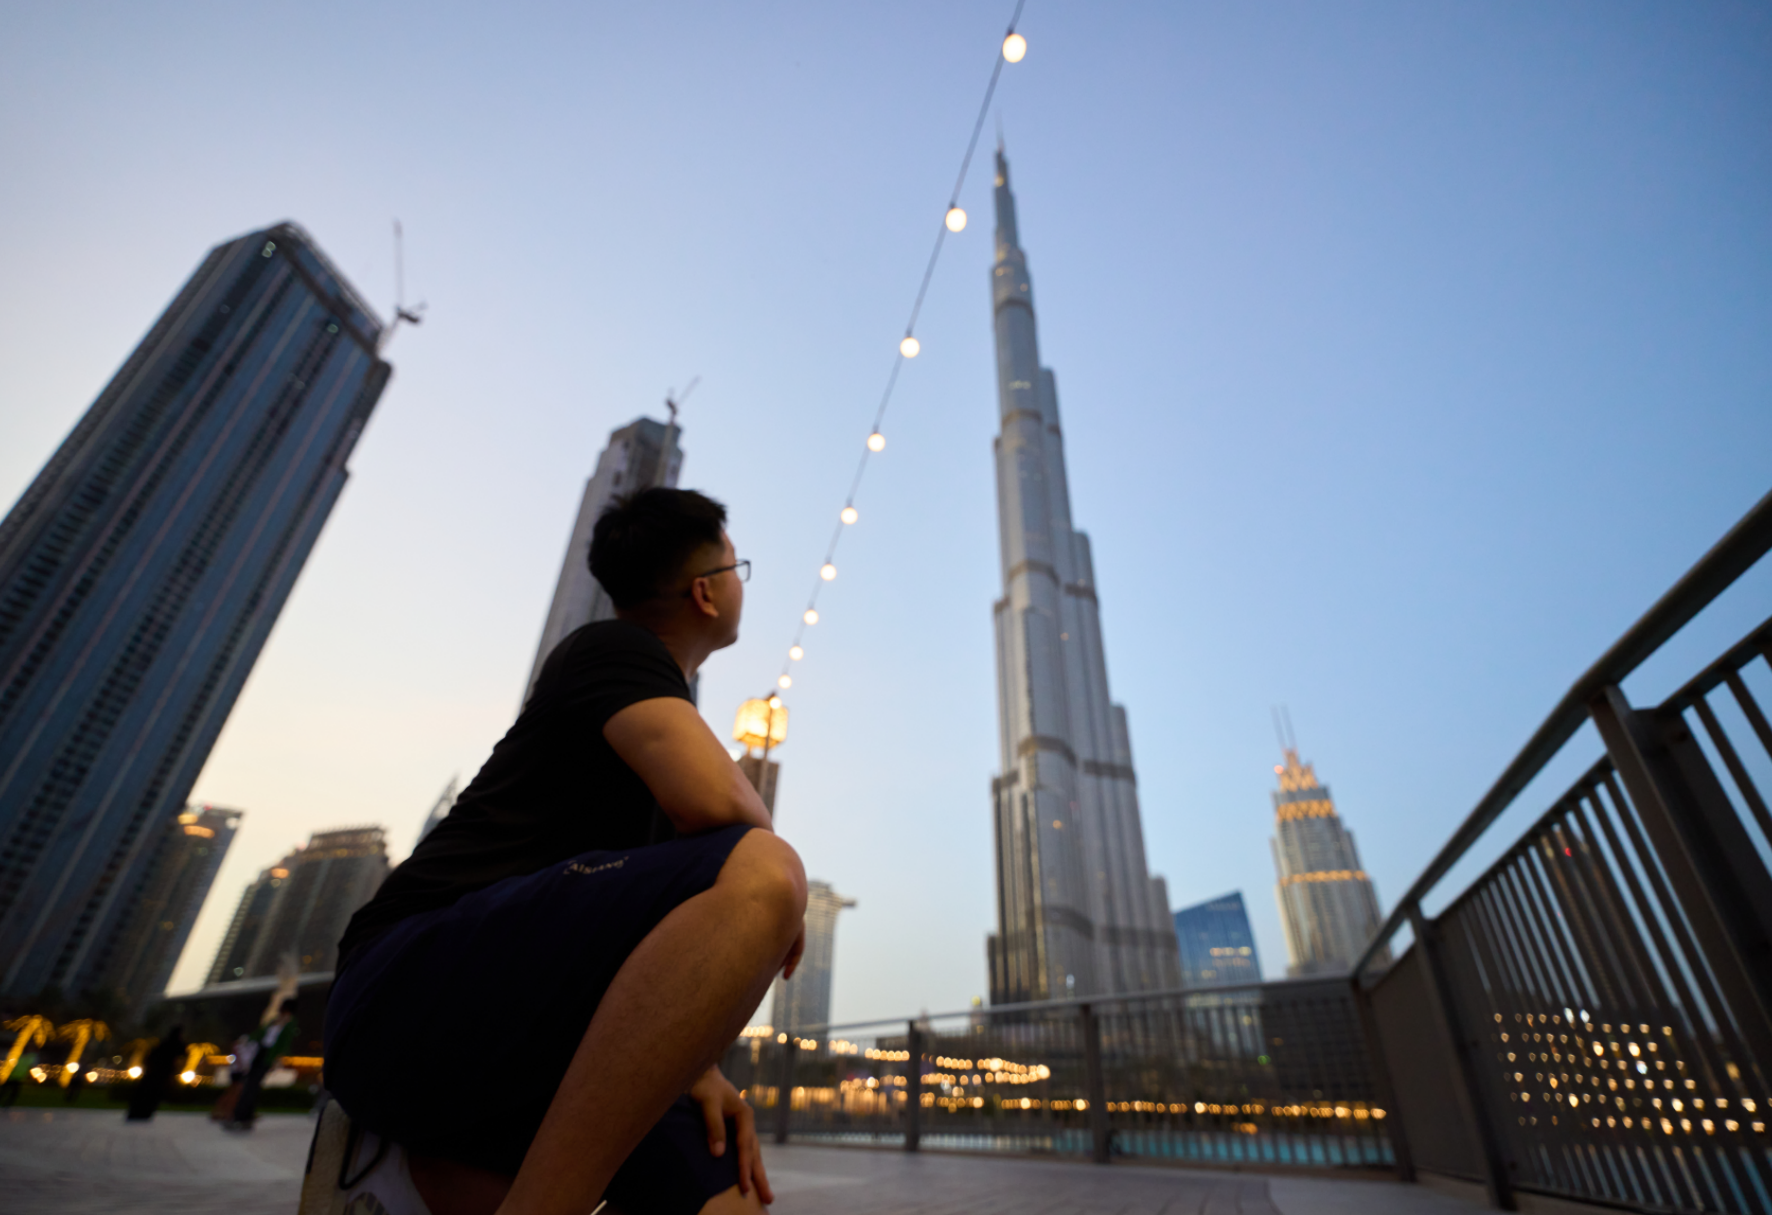 Dubai: Bạn muốn khám phá thành phố hiện đại và xa hoa nhất thế giới? Hãy xem bức ảnh Dubai này và đắm mình trong cảnh quan tuyệt đẹp của thành phố này. Với những tòa nhà cao chọc trời, sa mạc cuốn hút và những khu thương mại sầm uất, Dubai sẽ là một điểm đến đáng để thăm quan.